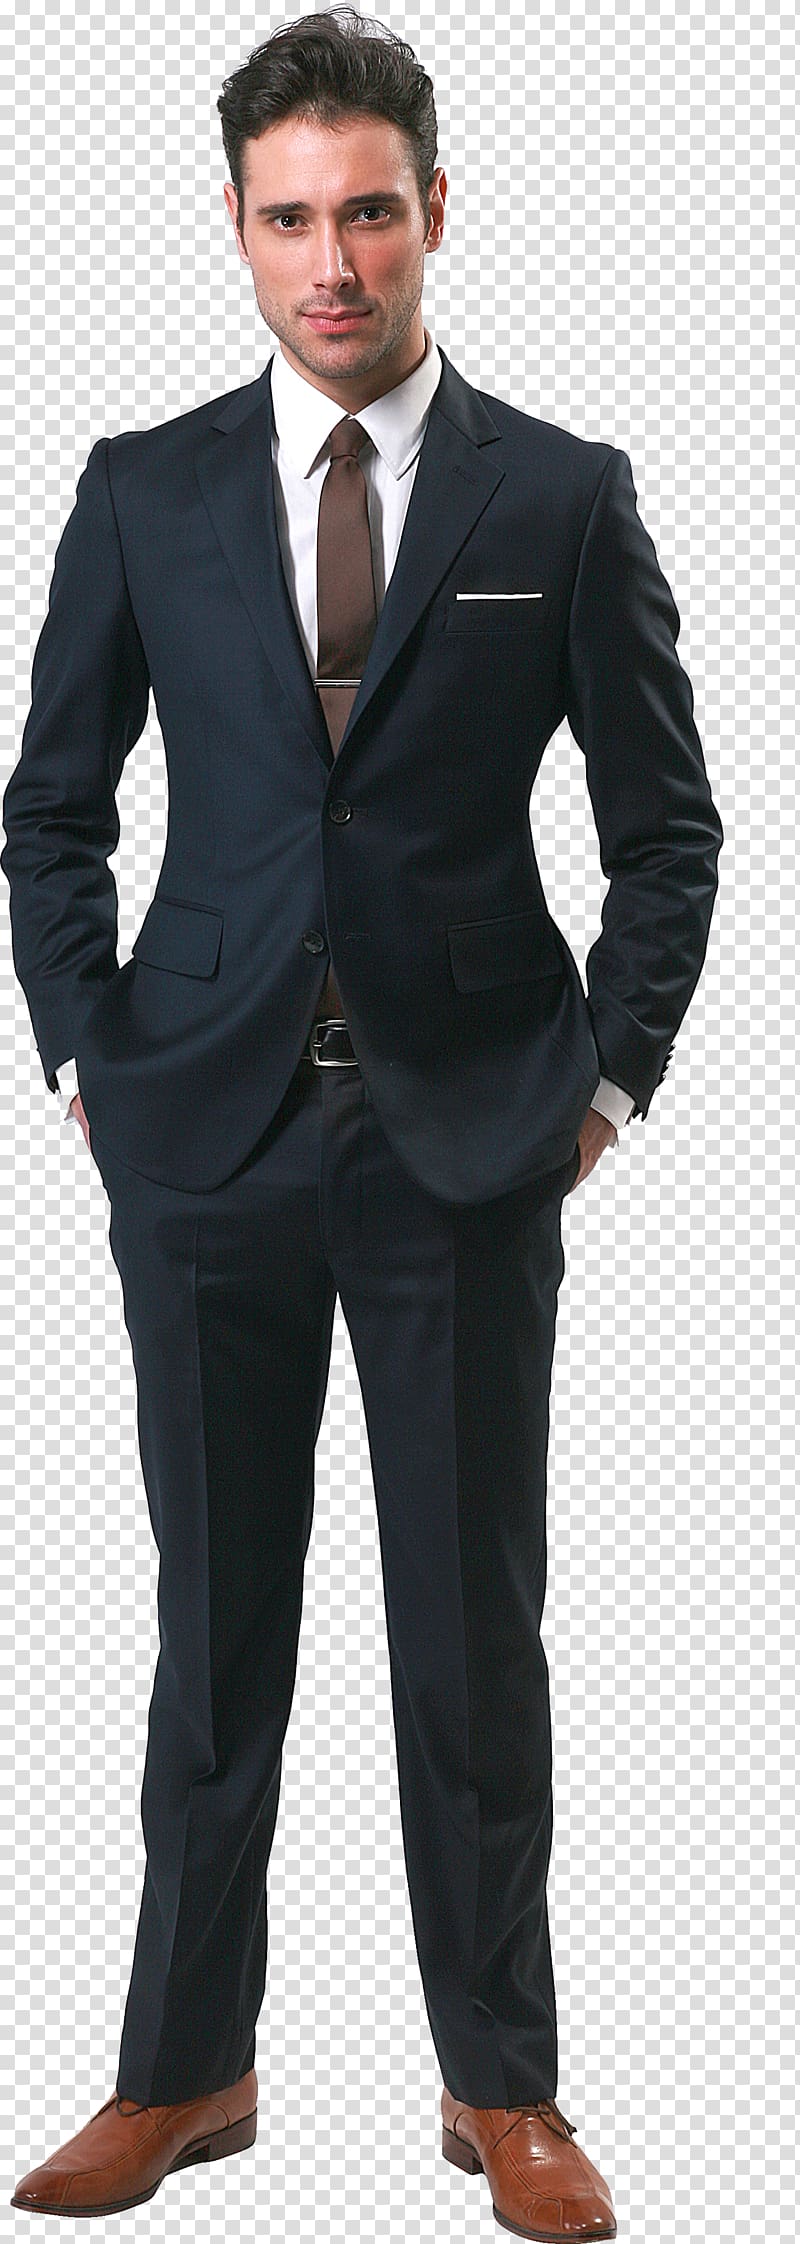 Men's black suit jacket, Business , Businessman transparent background ...